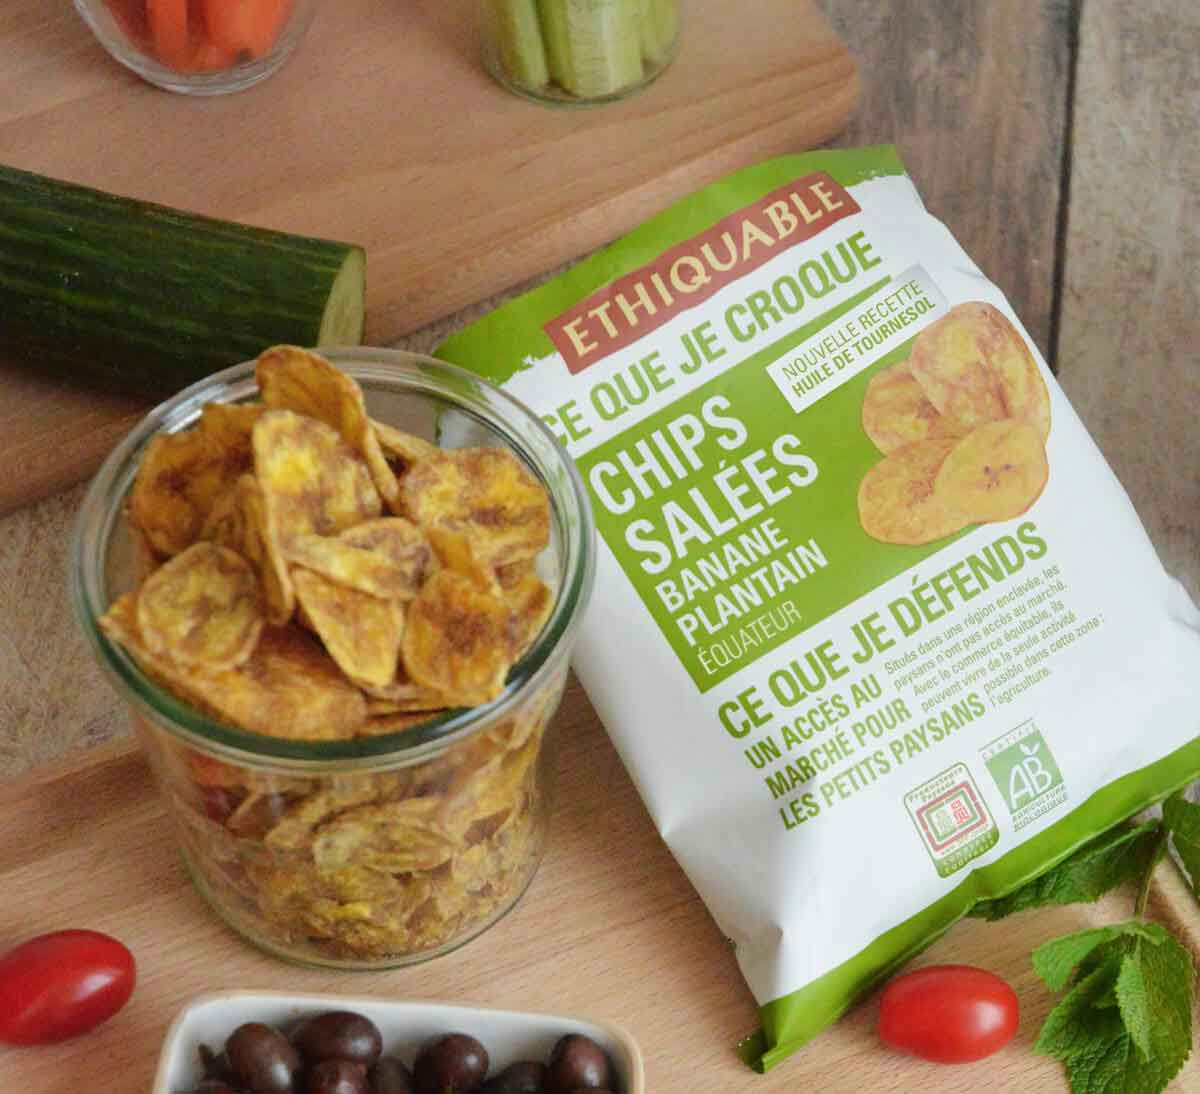 Ethiquable - Chips salées de banane plantain bio issues du Commerce Equitable